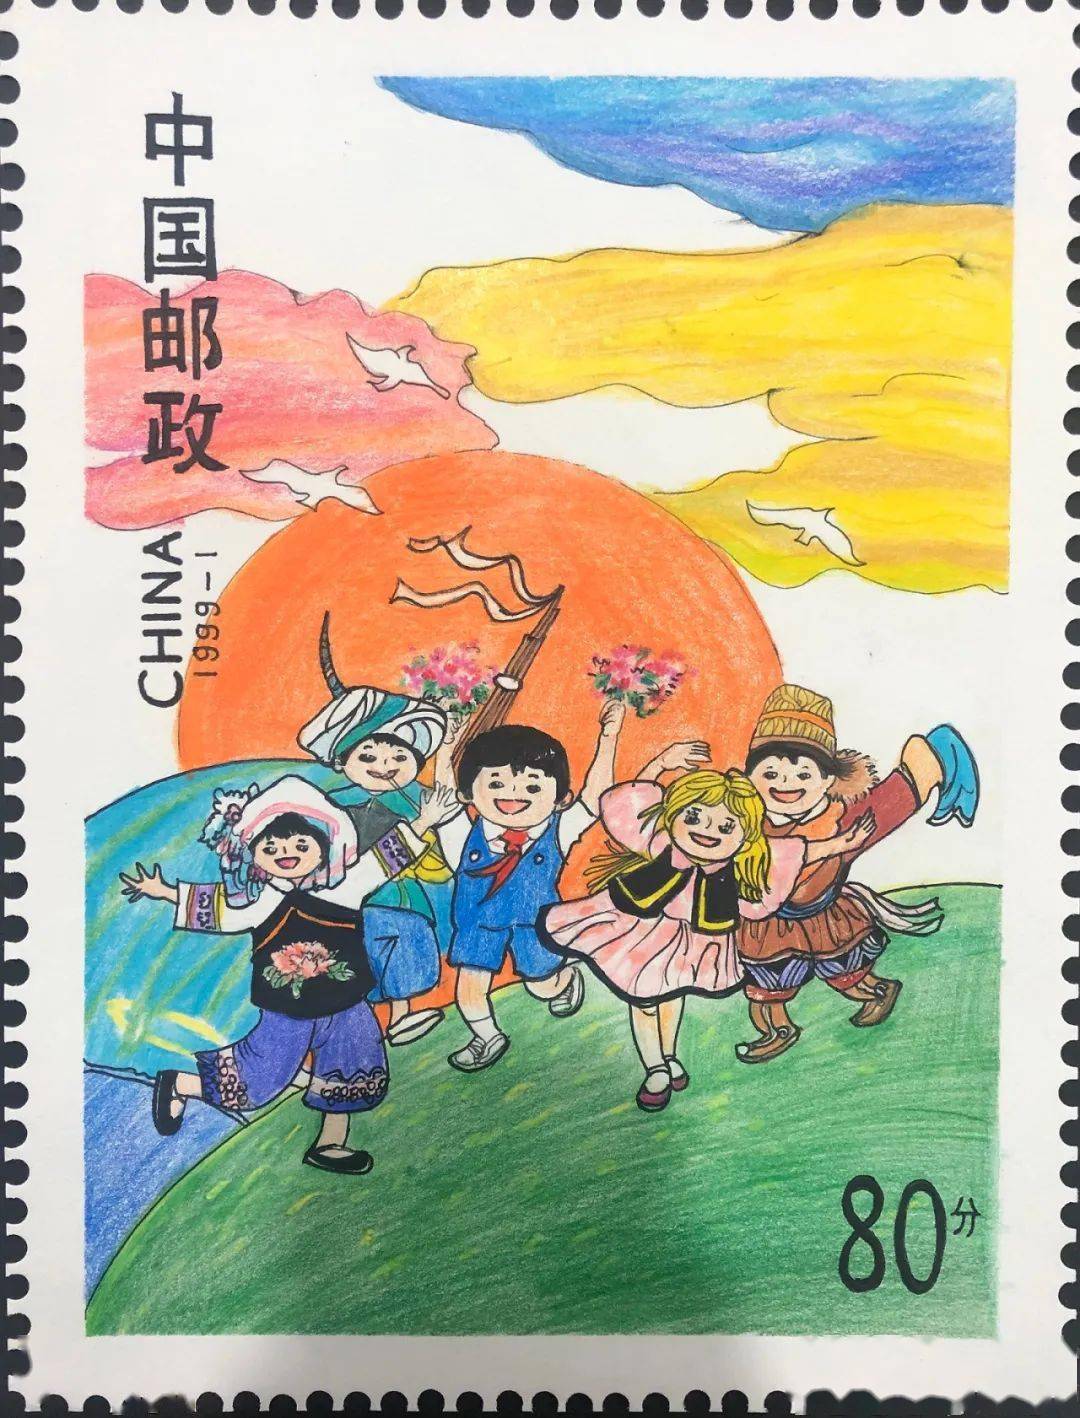 【喜报】我校学生荣获全国少年儿童邮票设计大赛一等奖